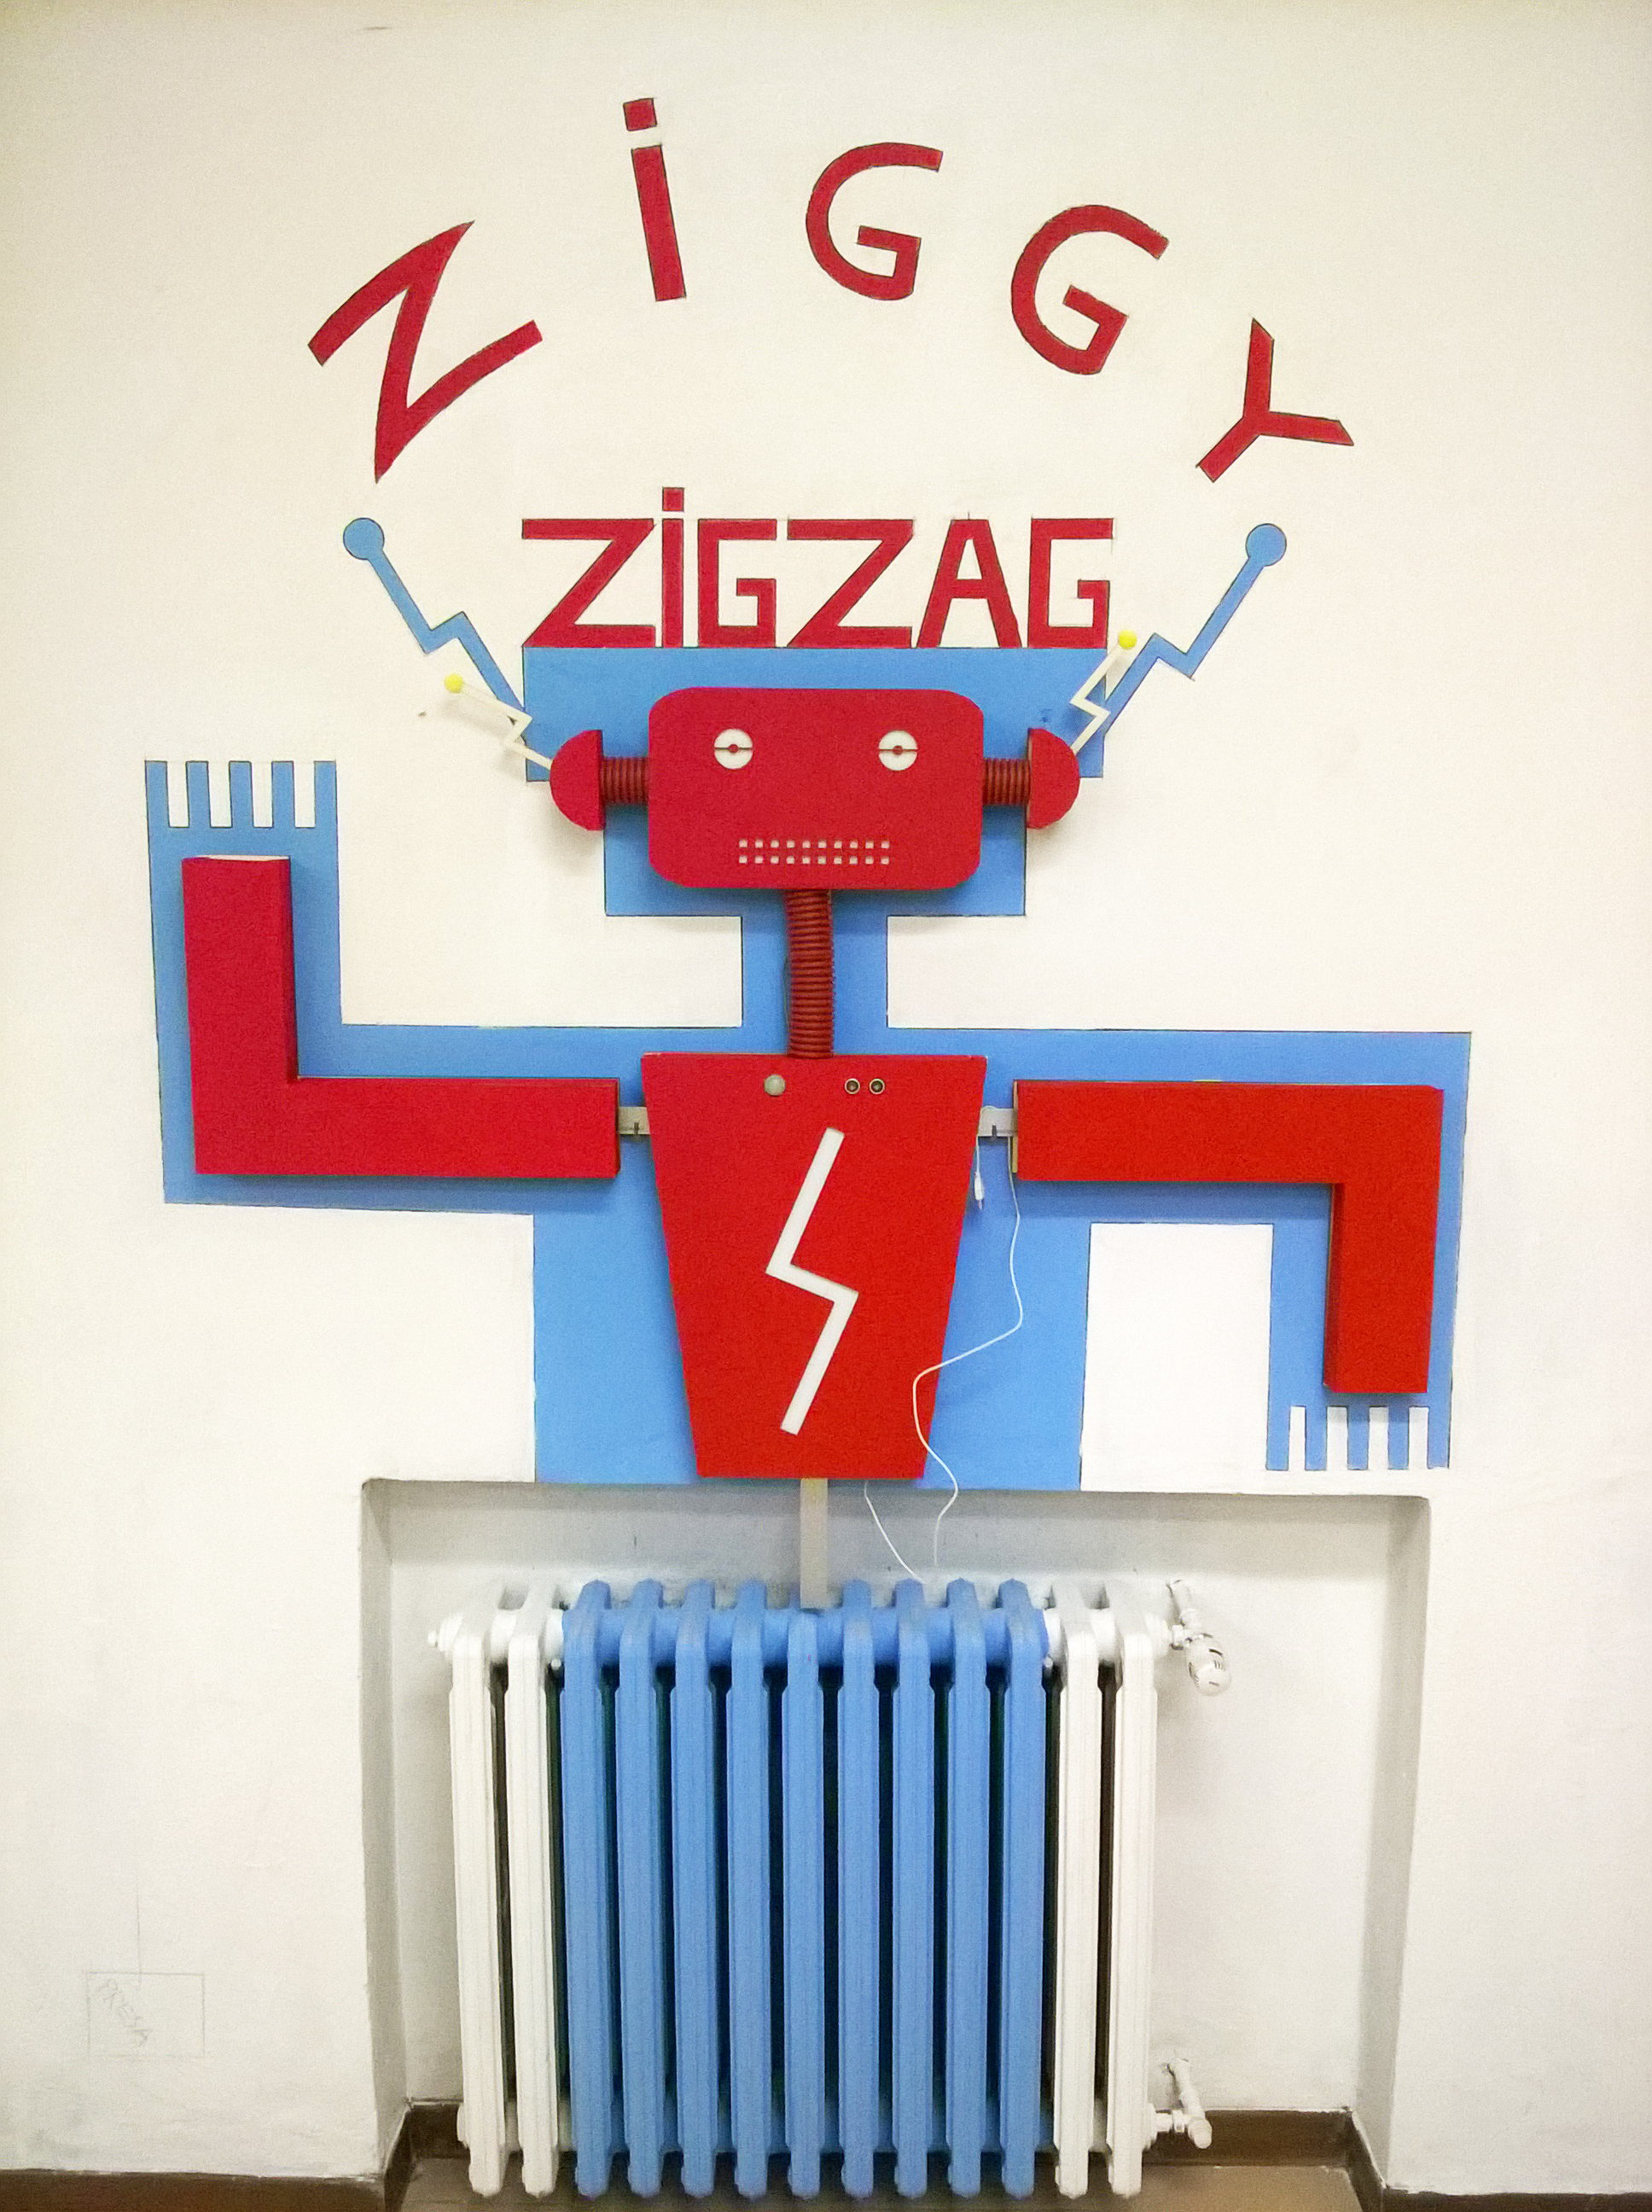 Ciao sono Ziggy Zig Zag io ci sono, tu ci sei: vieni da me c’è un sorriso per te!